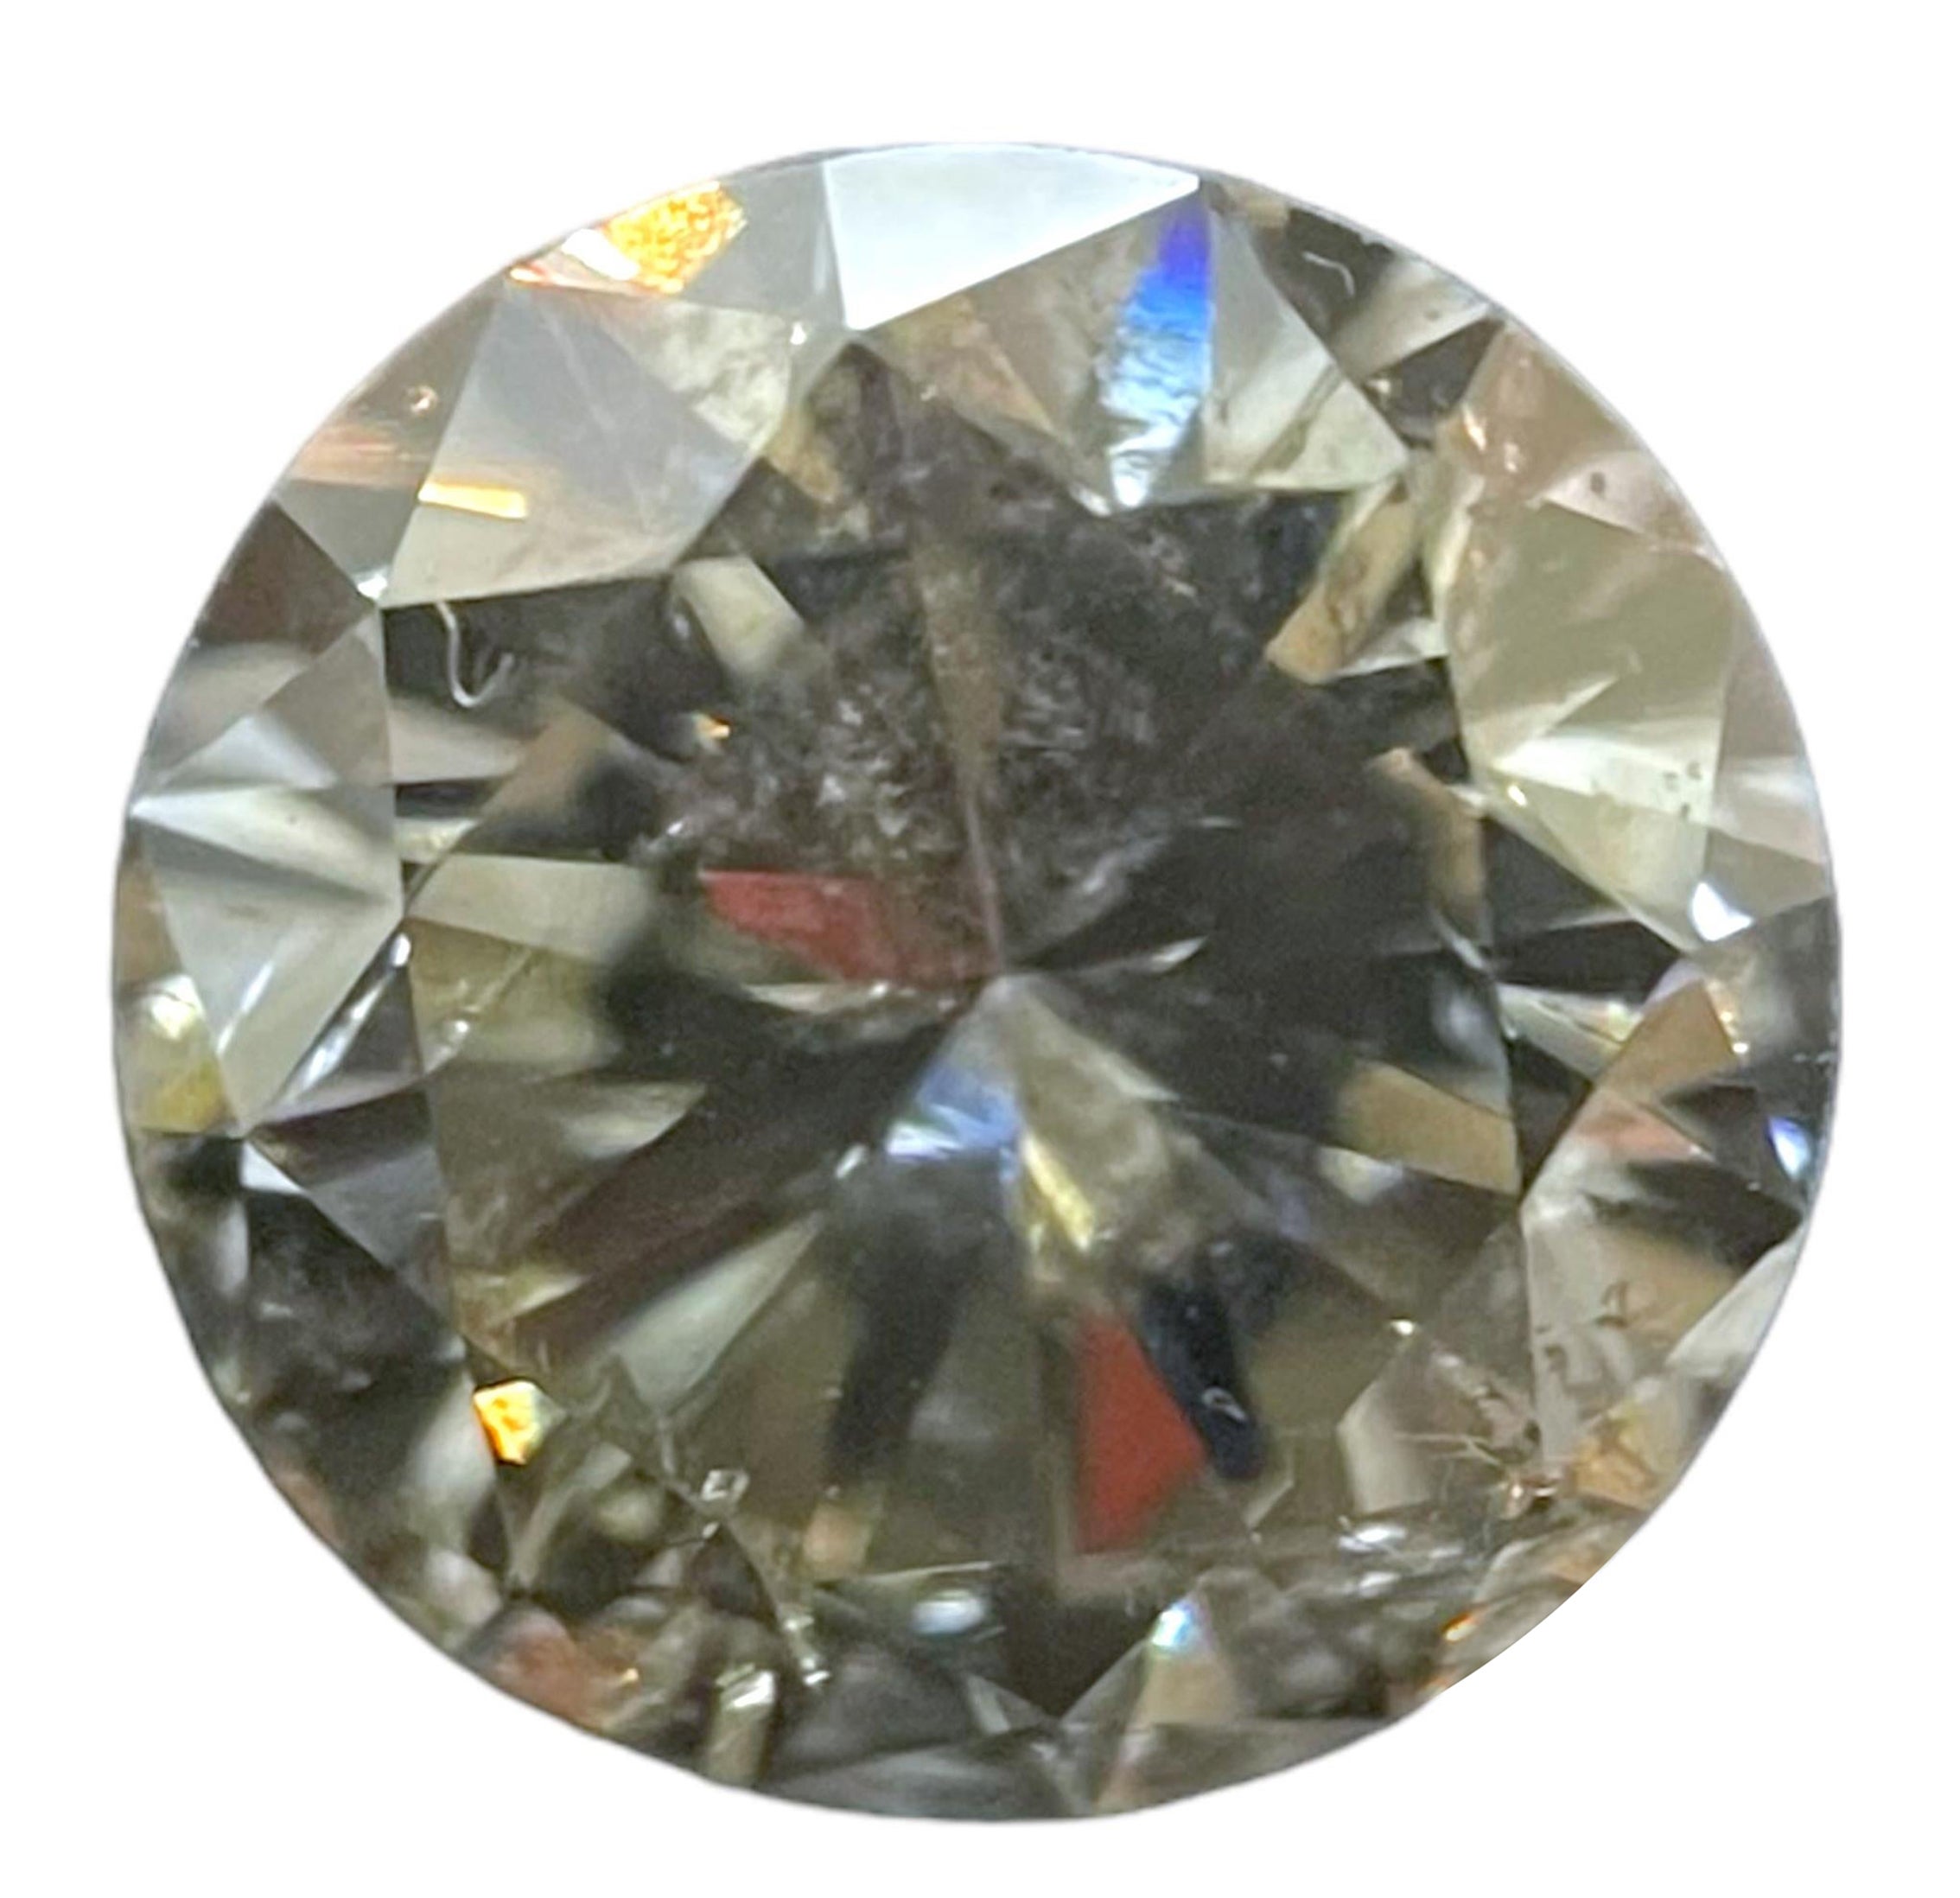 Diamant rond brillant de 0,99 carat certifié par le Gia, gris clair et de pureté I2